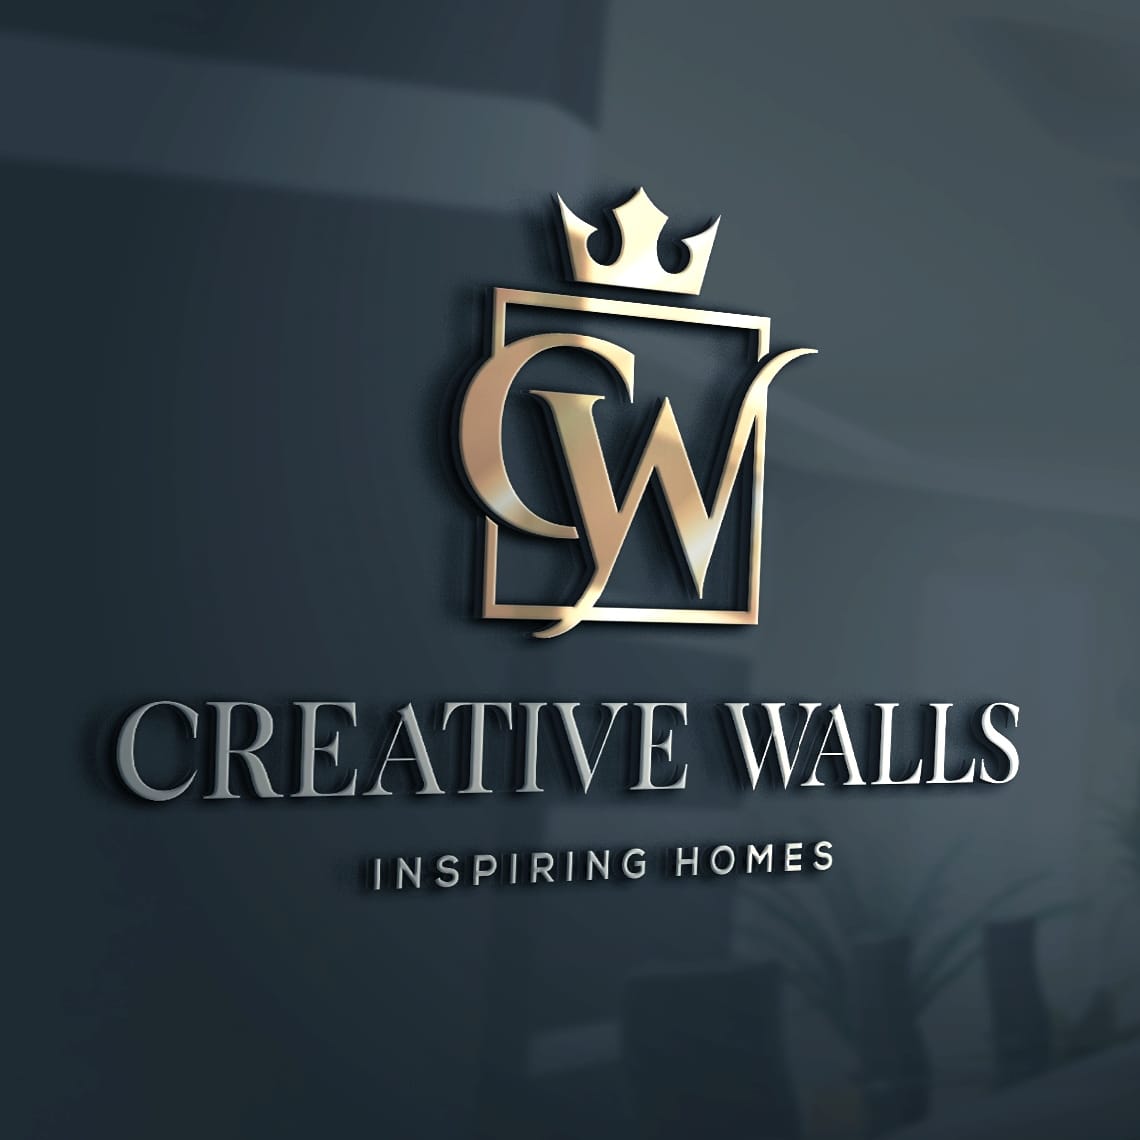 Creative walls interiors - Logo